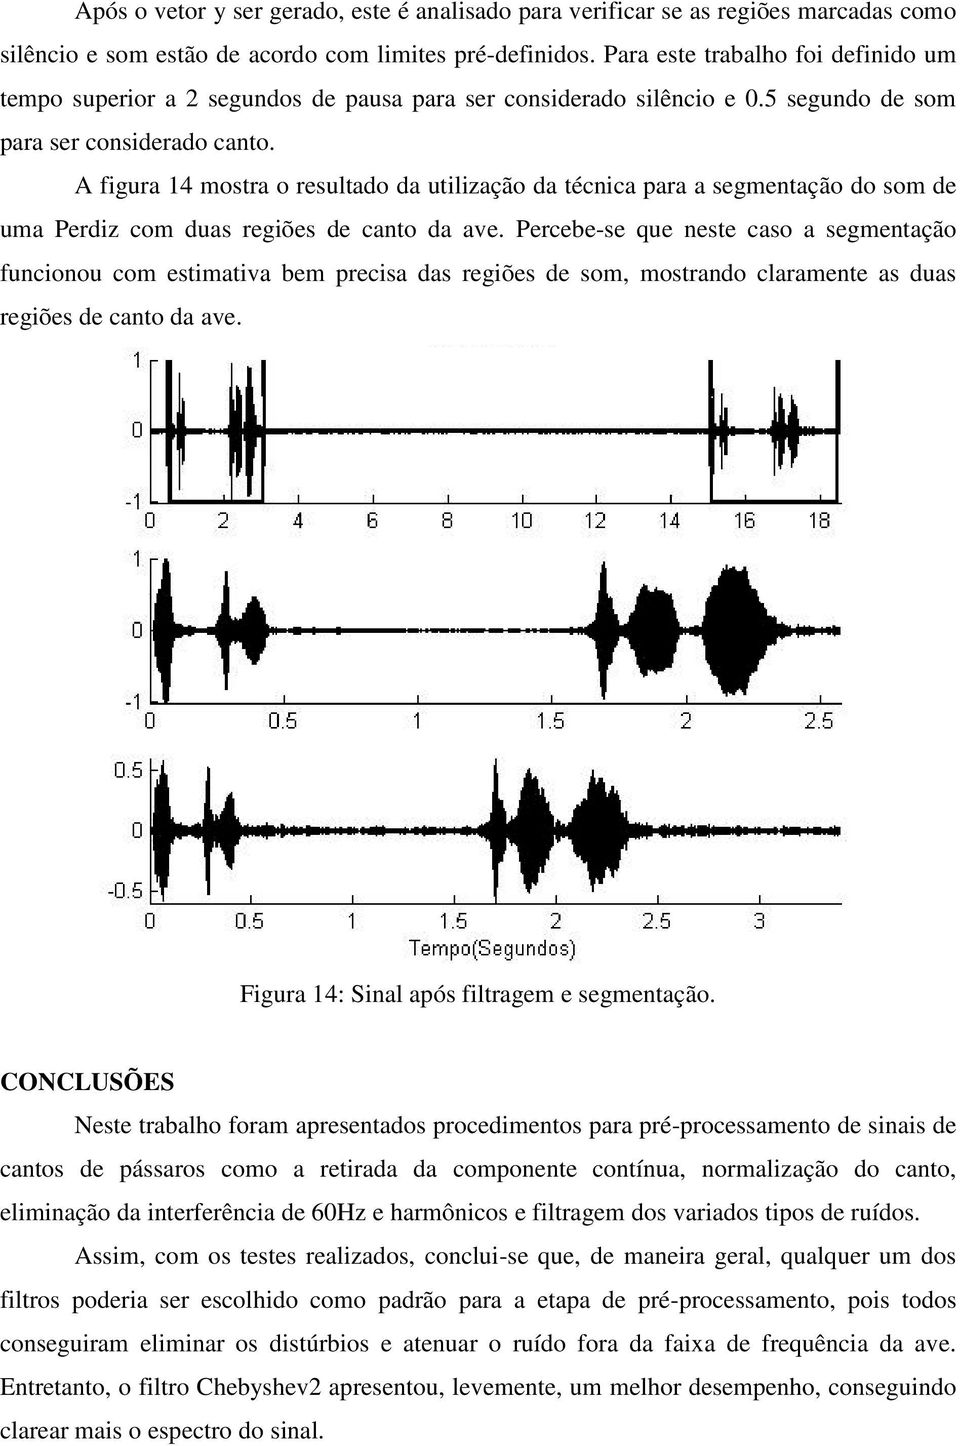 A figura 14 mostra o resultado da utilização da técnica para a segmentação do som de uma Perdiz com duas regiões de canto da ave.